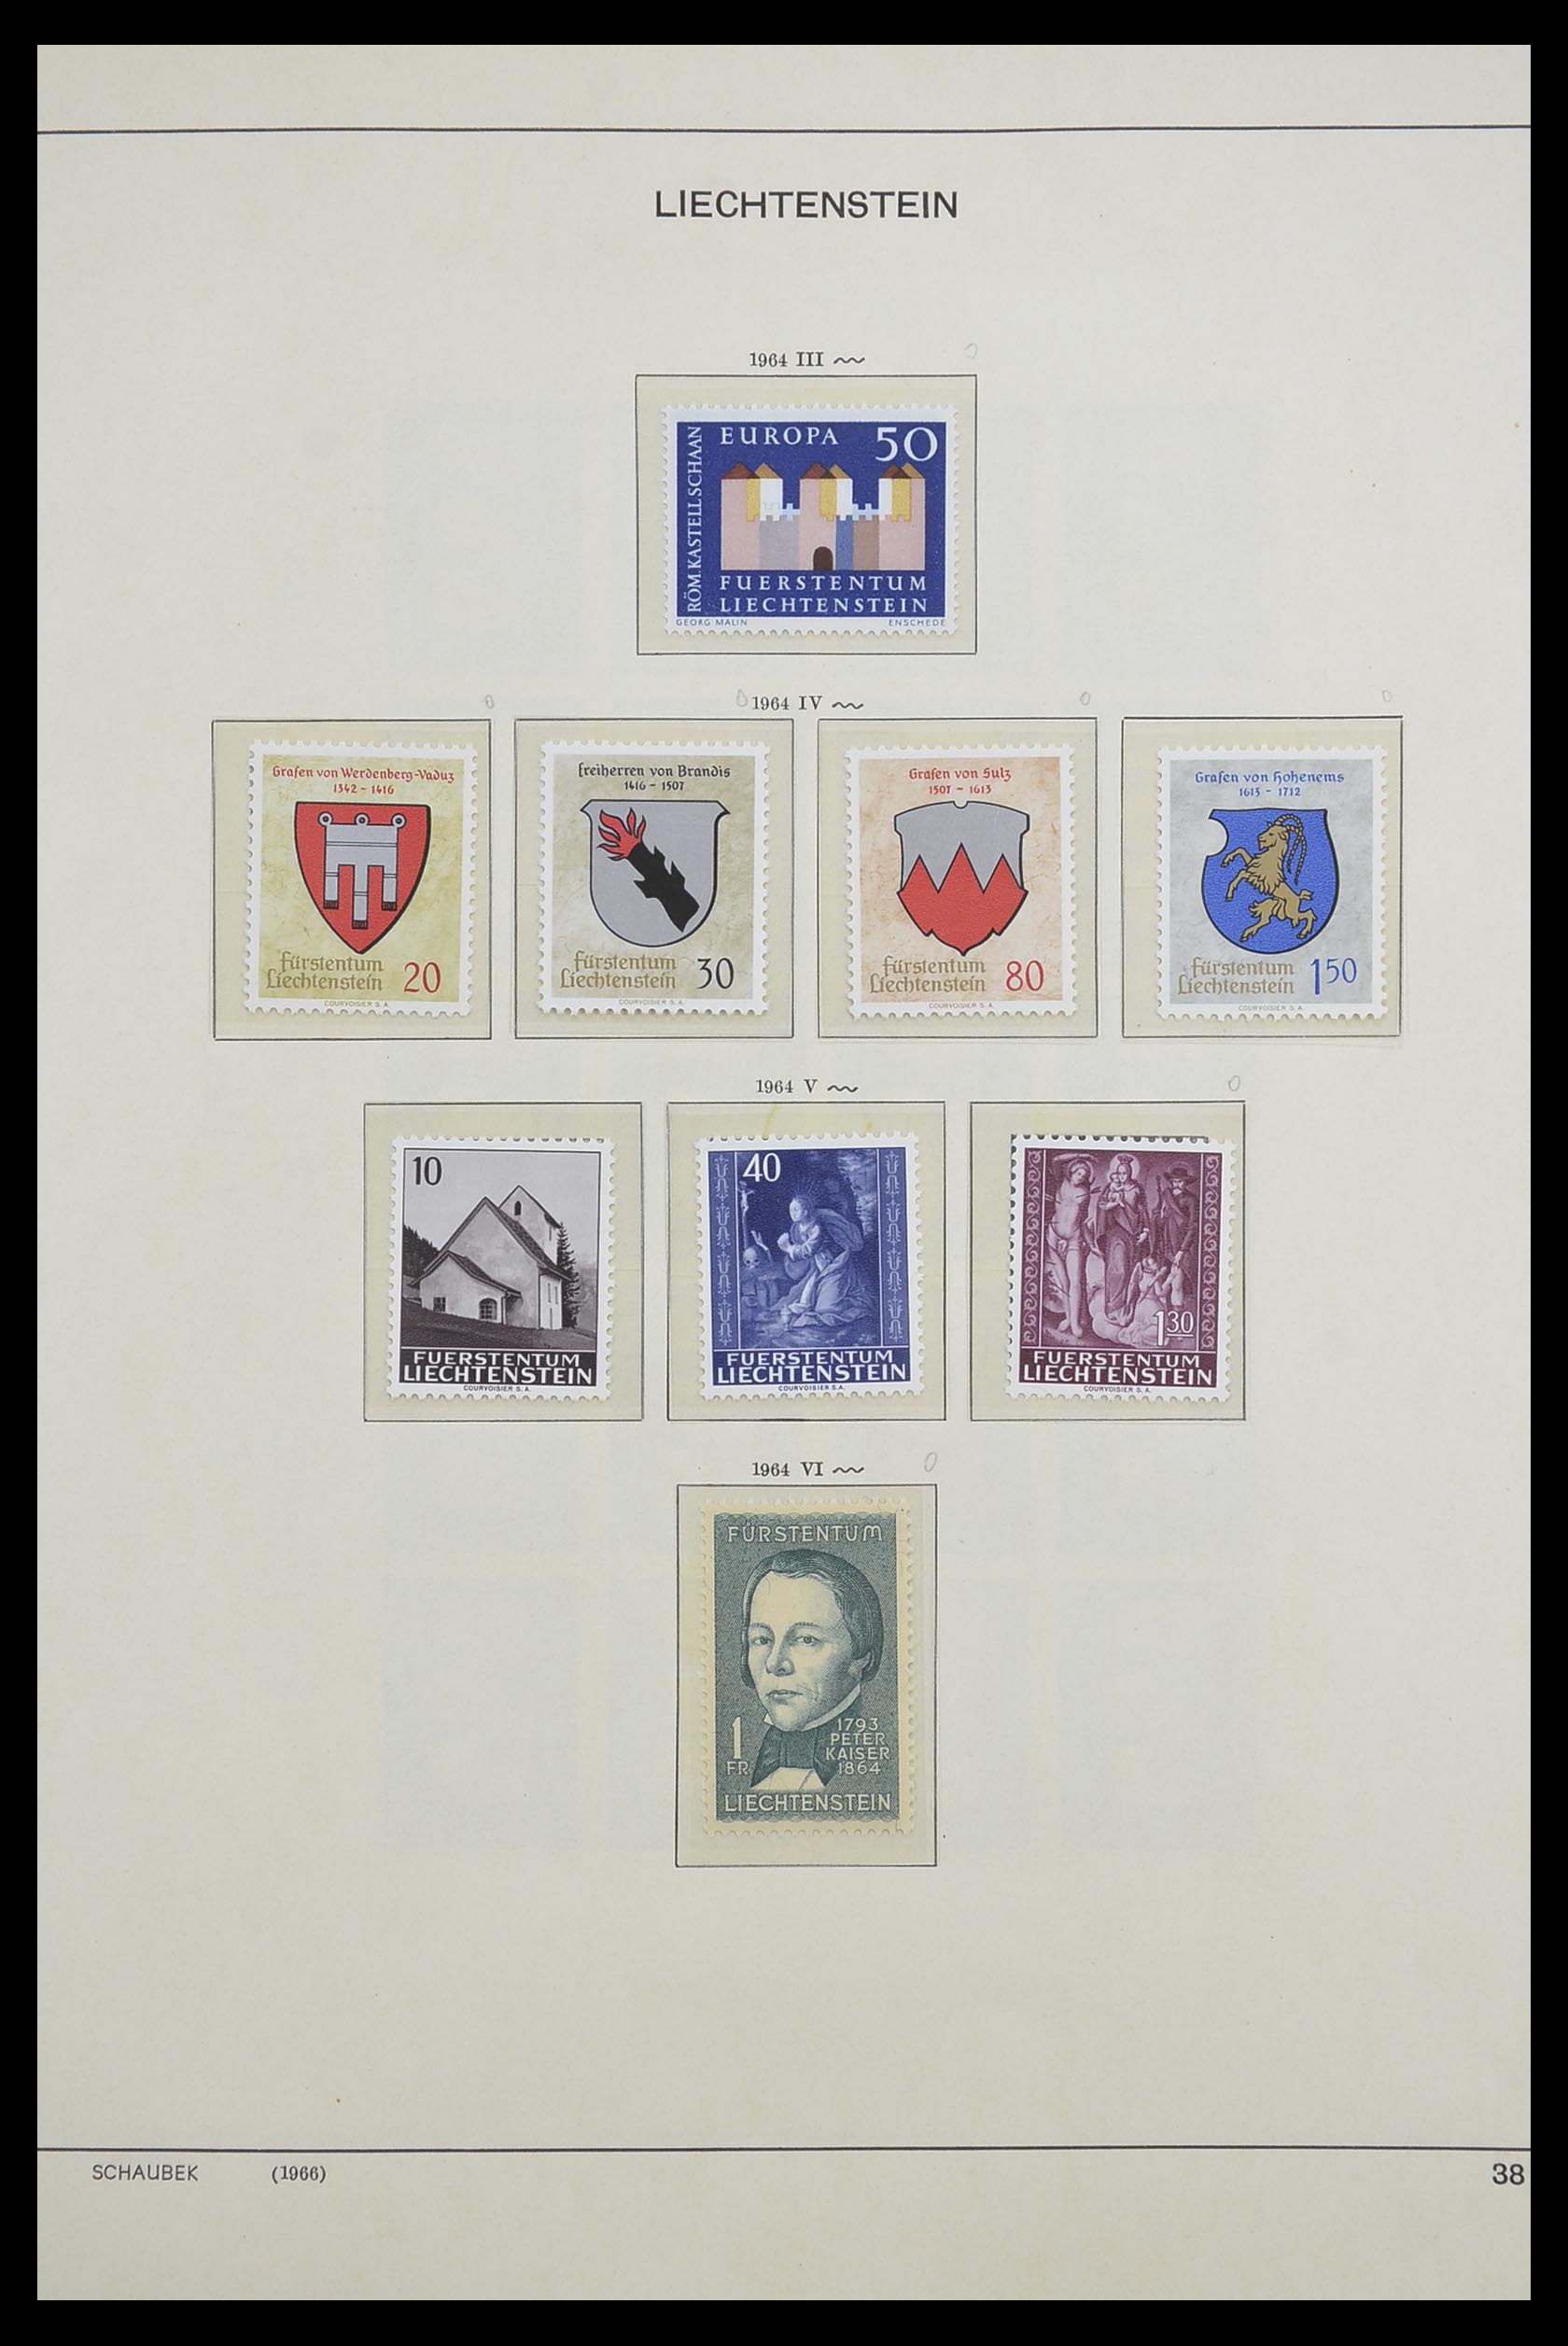 33274 040 - Postzegelverzameling 33274 Liechtenstein 1912-1996.